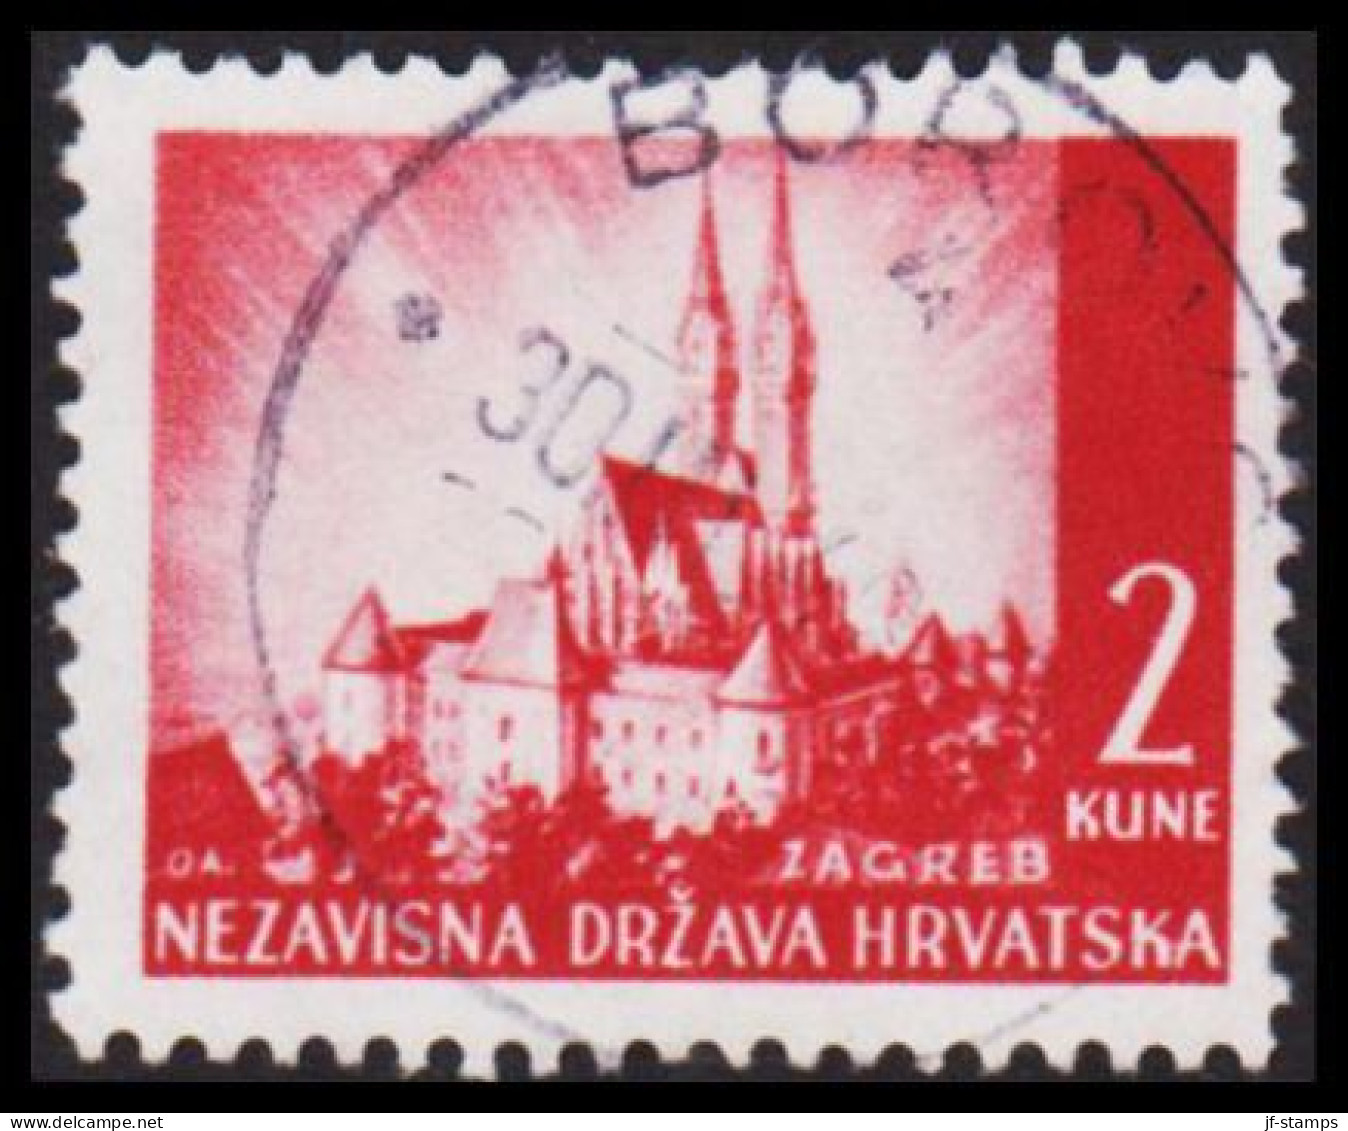 1941-1942. HRVATSKA Landscapes 2 KUNE.  (Michel 52) - JF546046 - Croatia